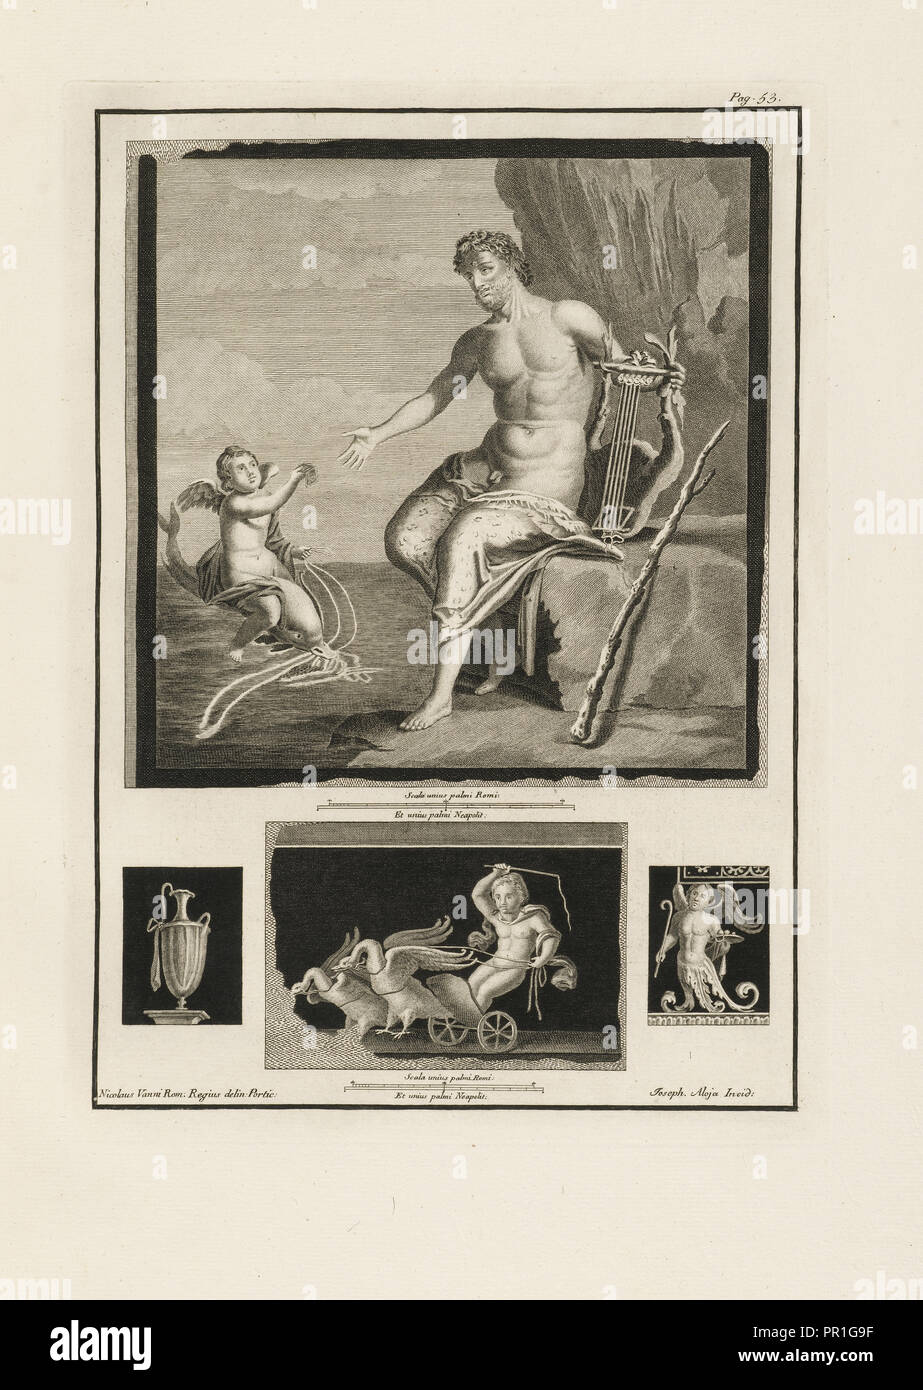 Page 53, vol. 1, Delle antichità di Ercolano, Alloja, Giuseppe, 18th cent., Vanni, Niccolo, 18th cent., Engraving, 1757-1792 Stock Photo